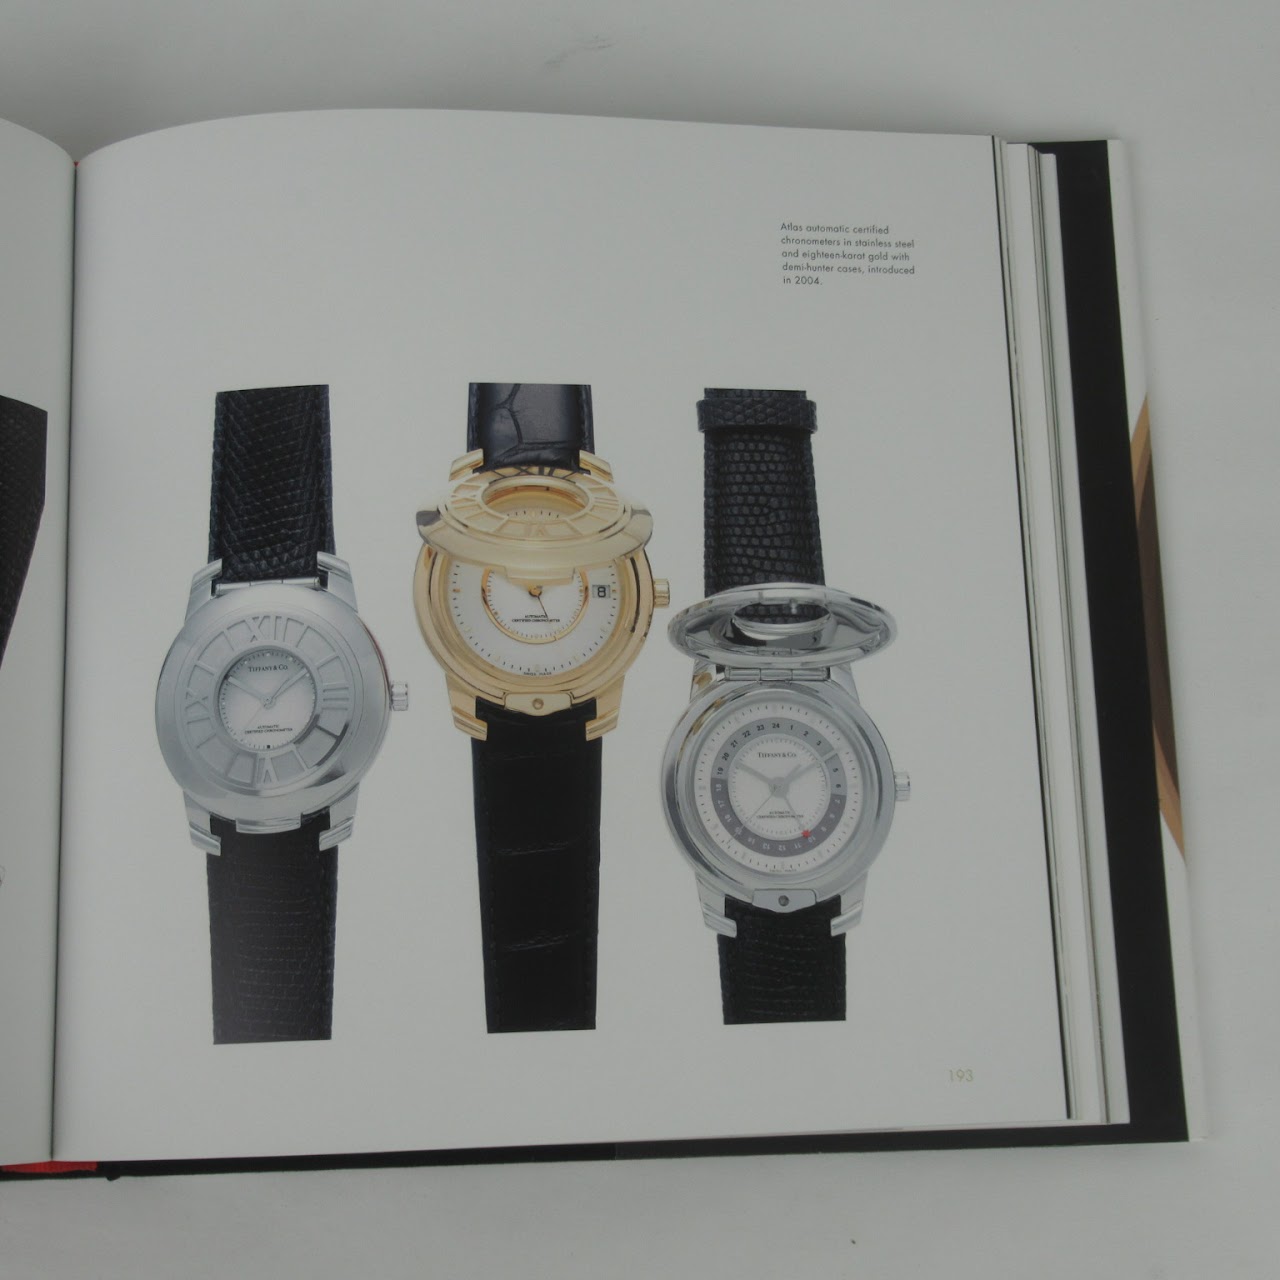 Tiffany & Co. "Tiffany Time" Book